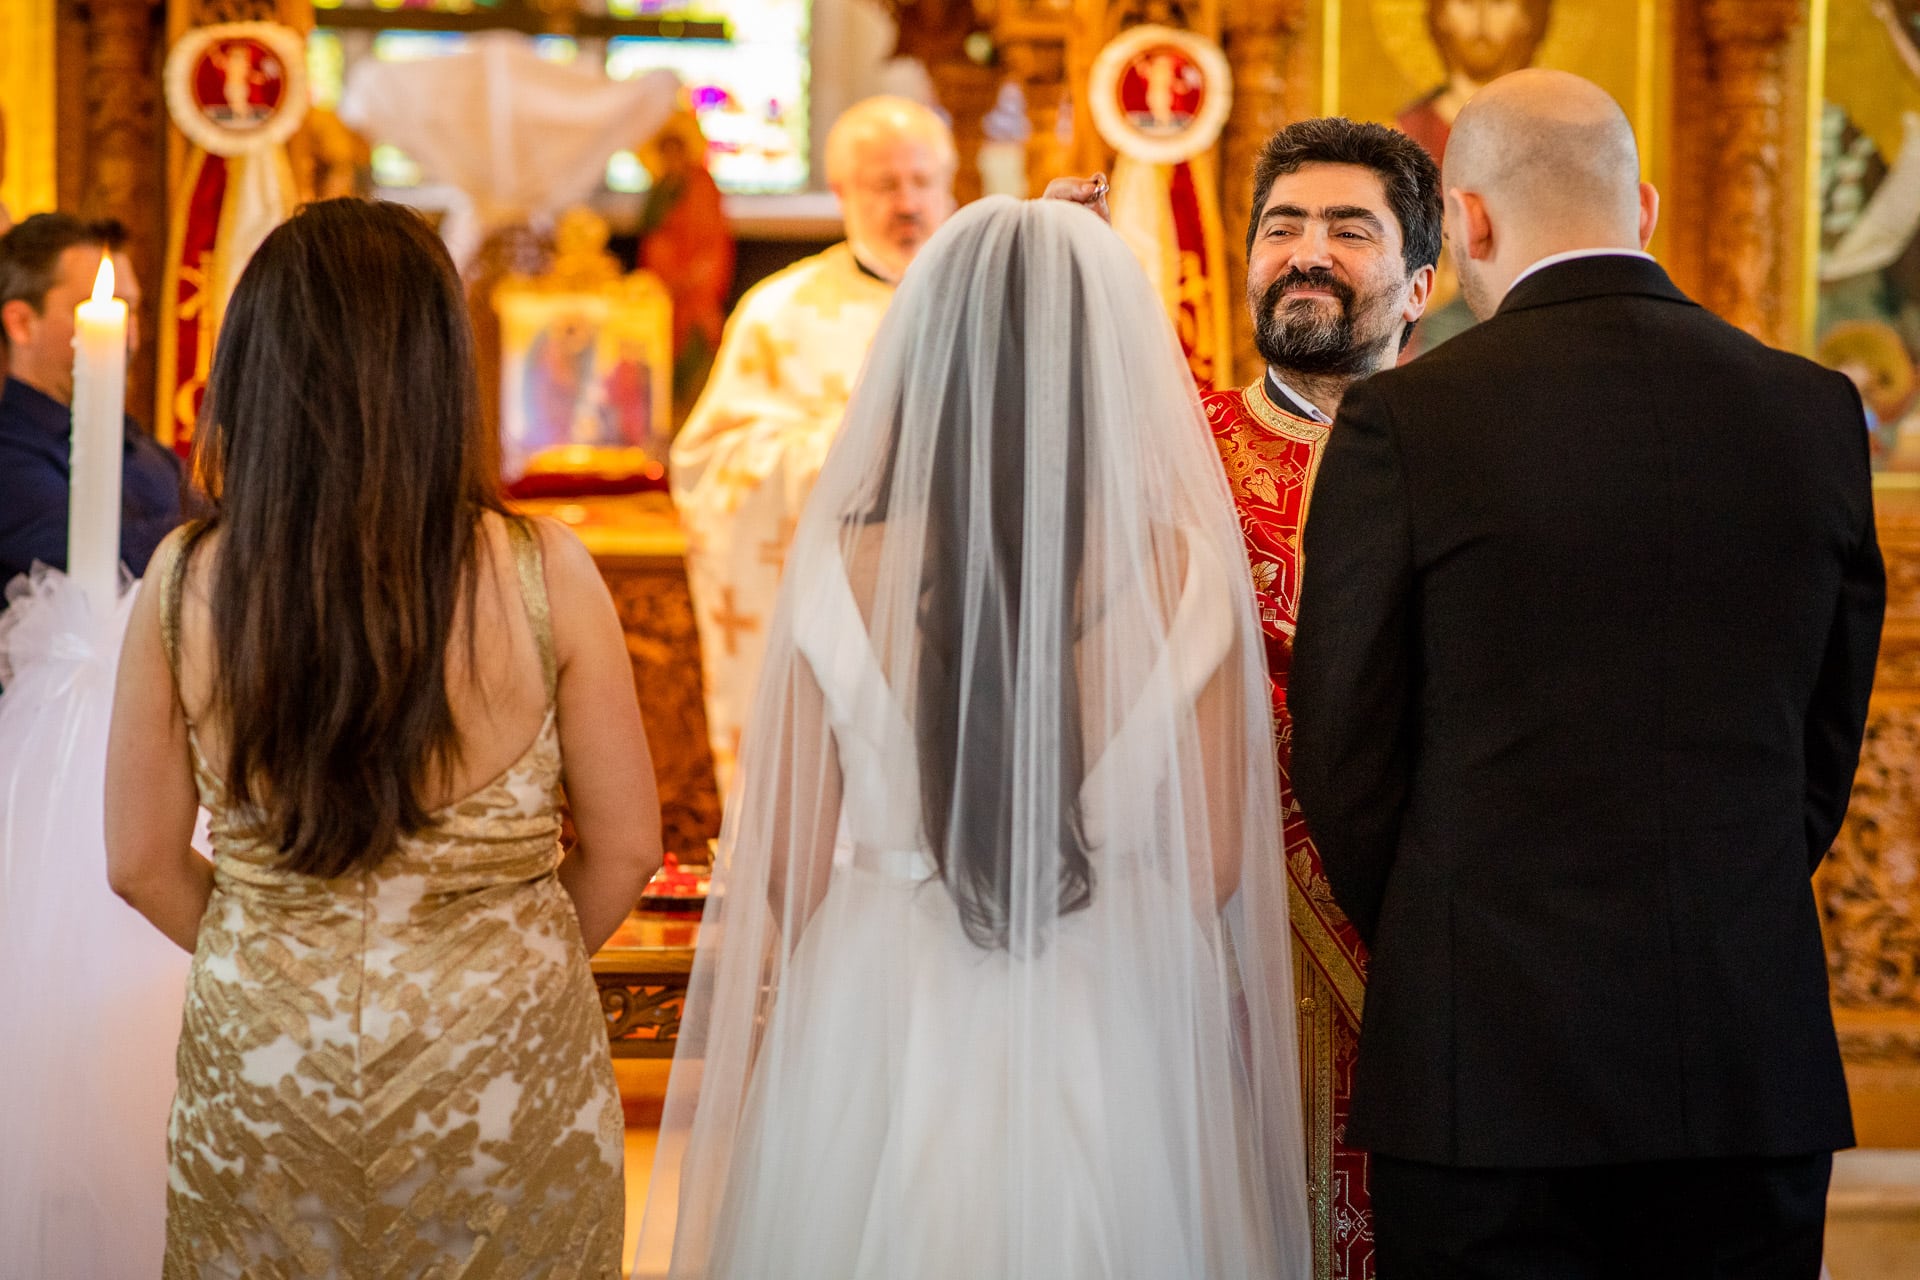 greek orthodox wedding